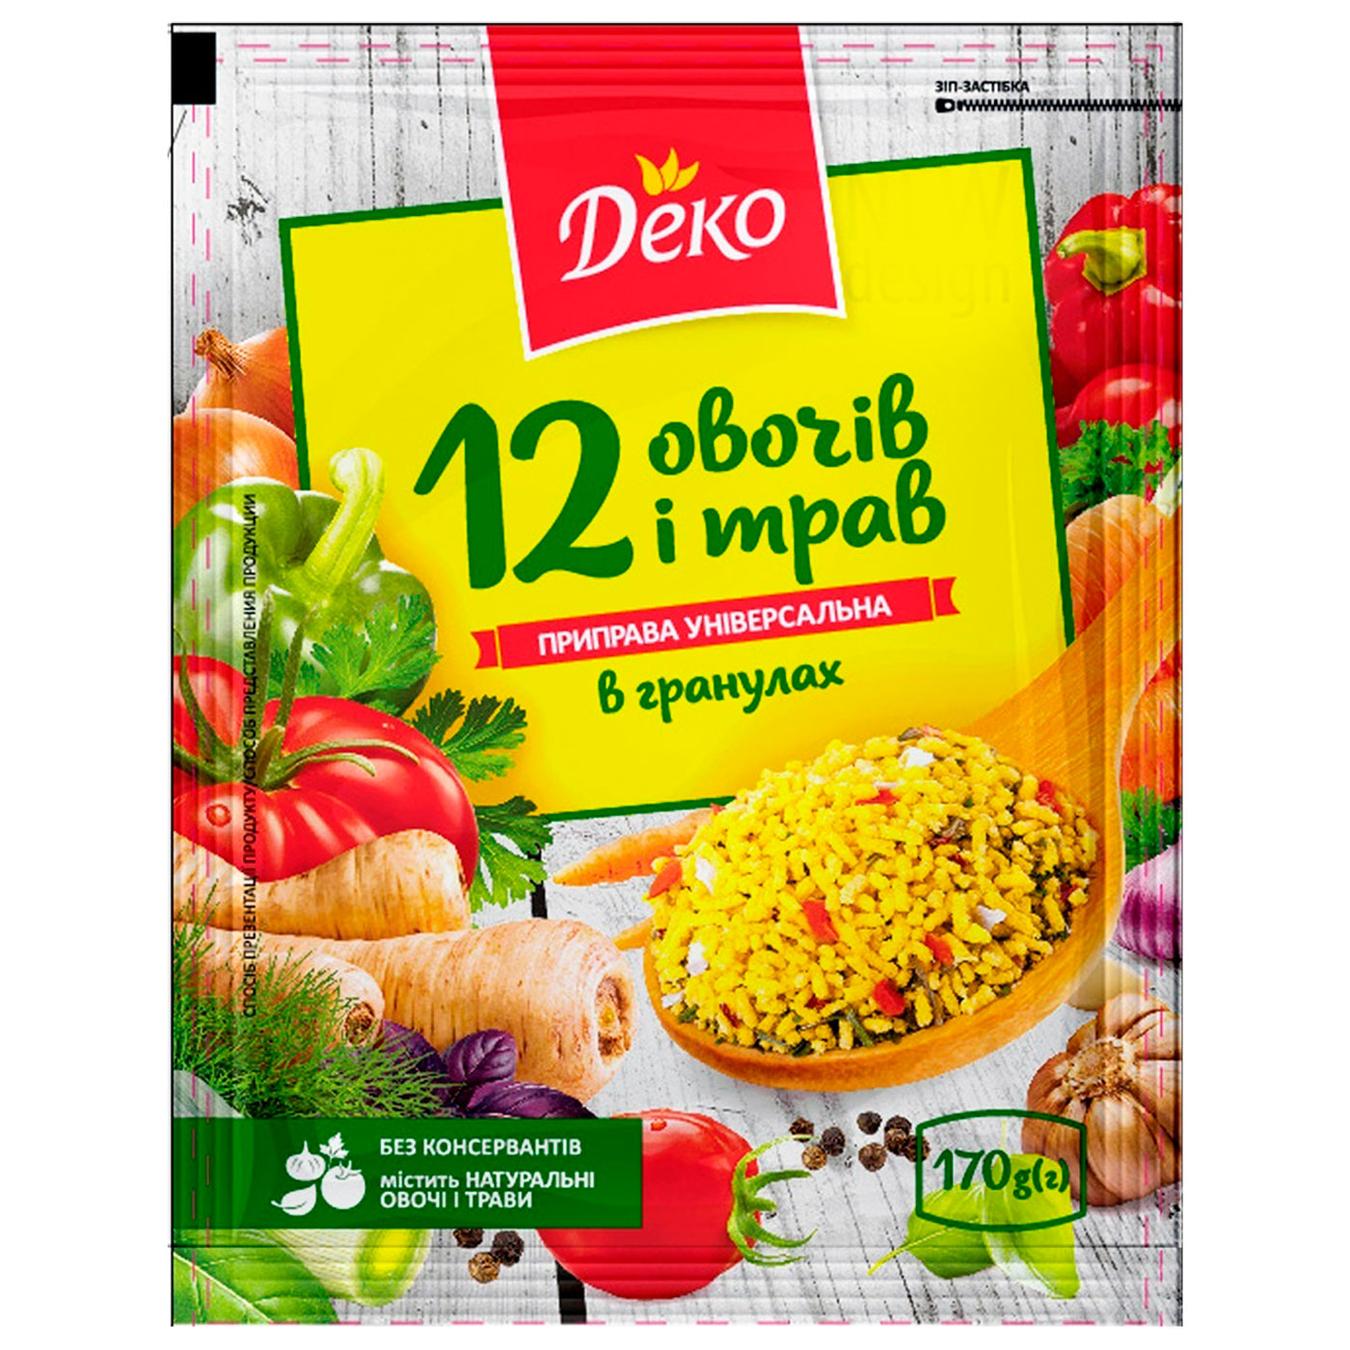 Seasoning Deko granulated universal 12 vegetables and herbs 170g